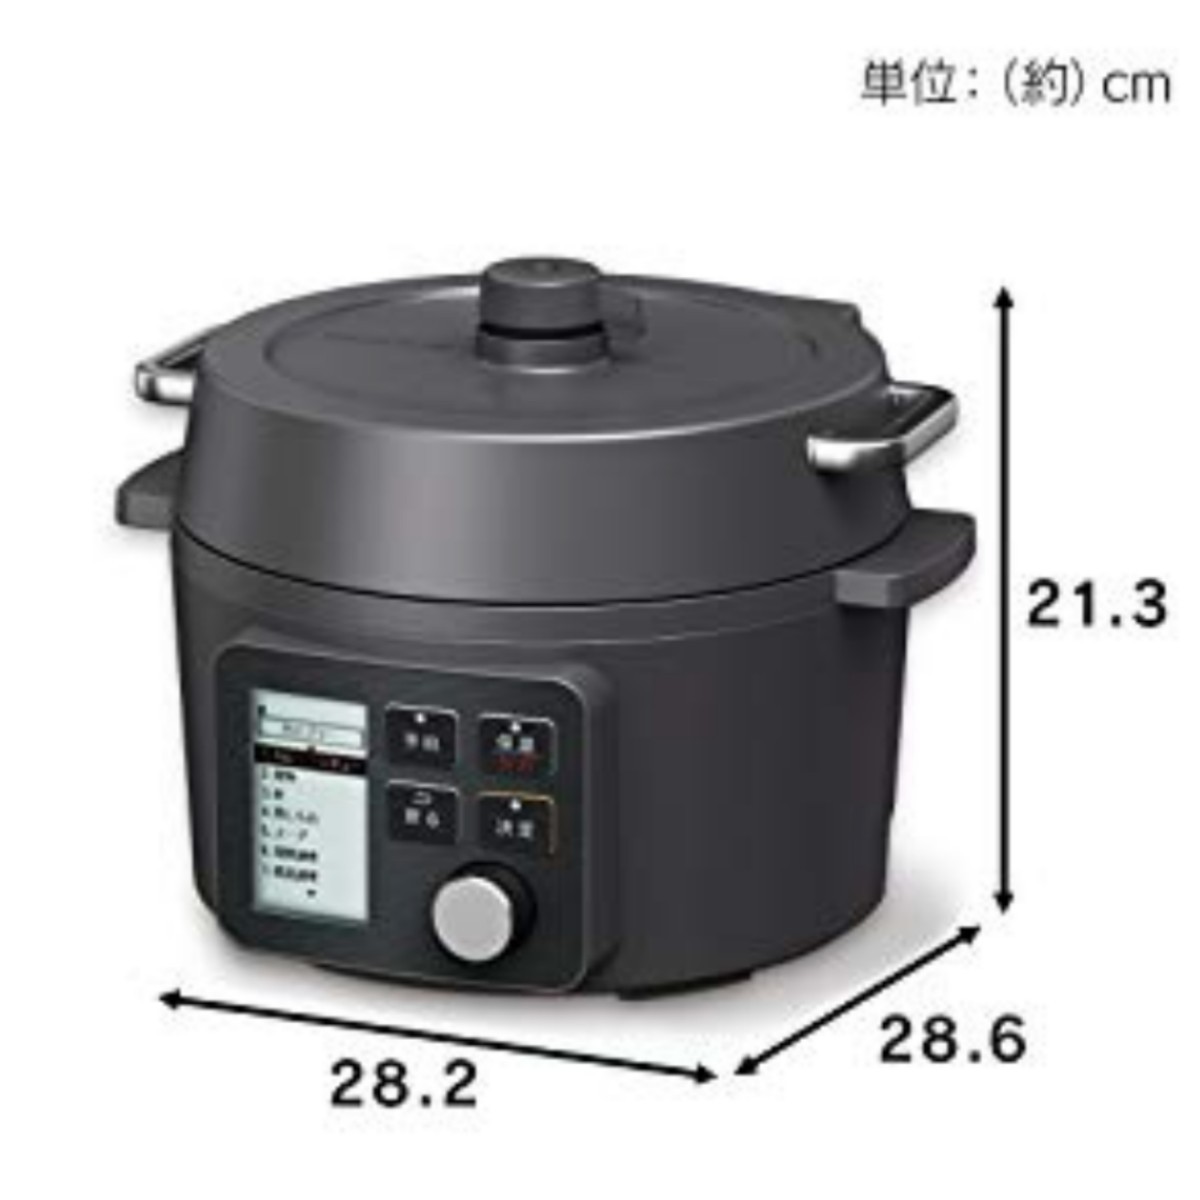 【新品未開封】アイリスオーヤマ電気圧力鍋2.2L KPC-MA2-B ブラック